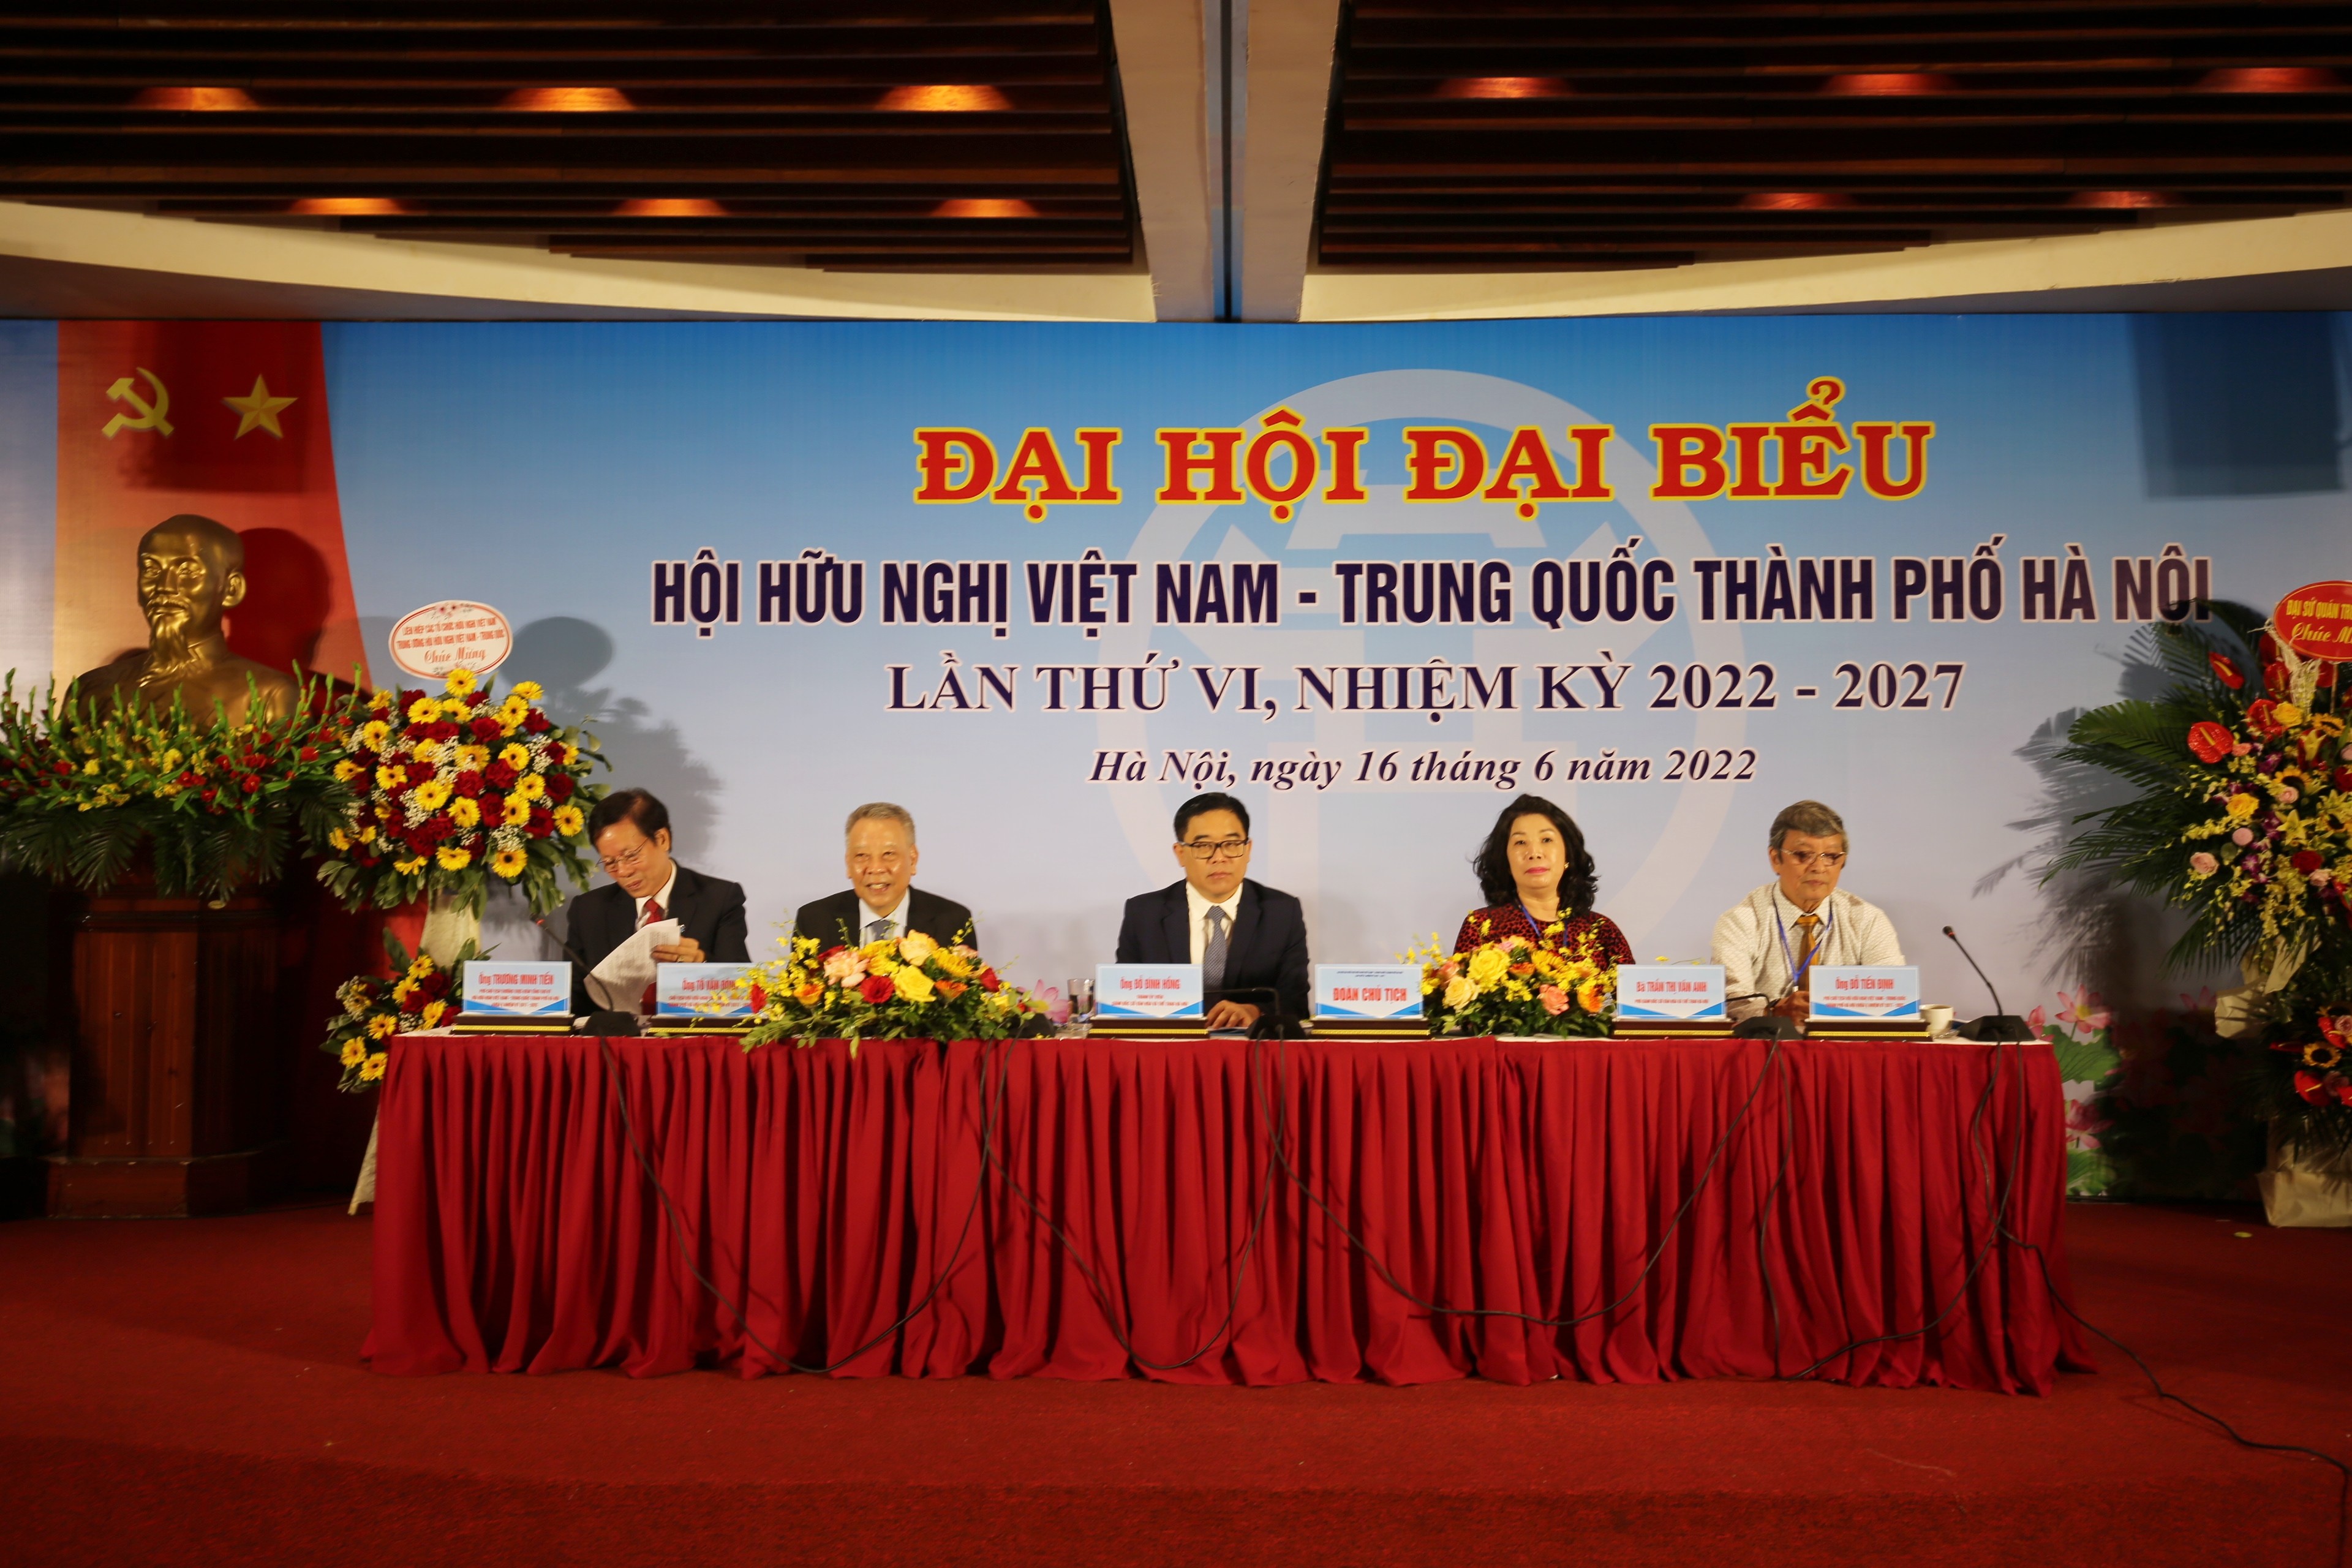 Hội hữu nghị Việt Nam – Trung Quốc thành phố Hà Nội tổ chức thành công Đại hội đại biểu lần thứ VI